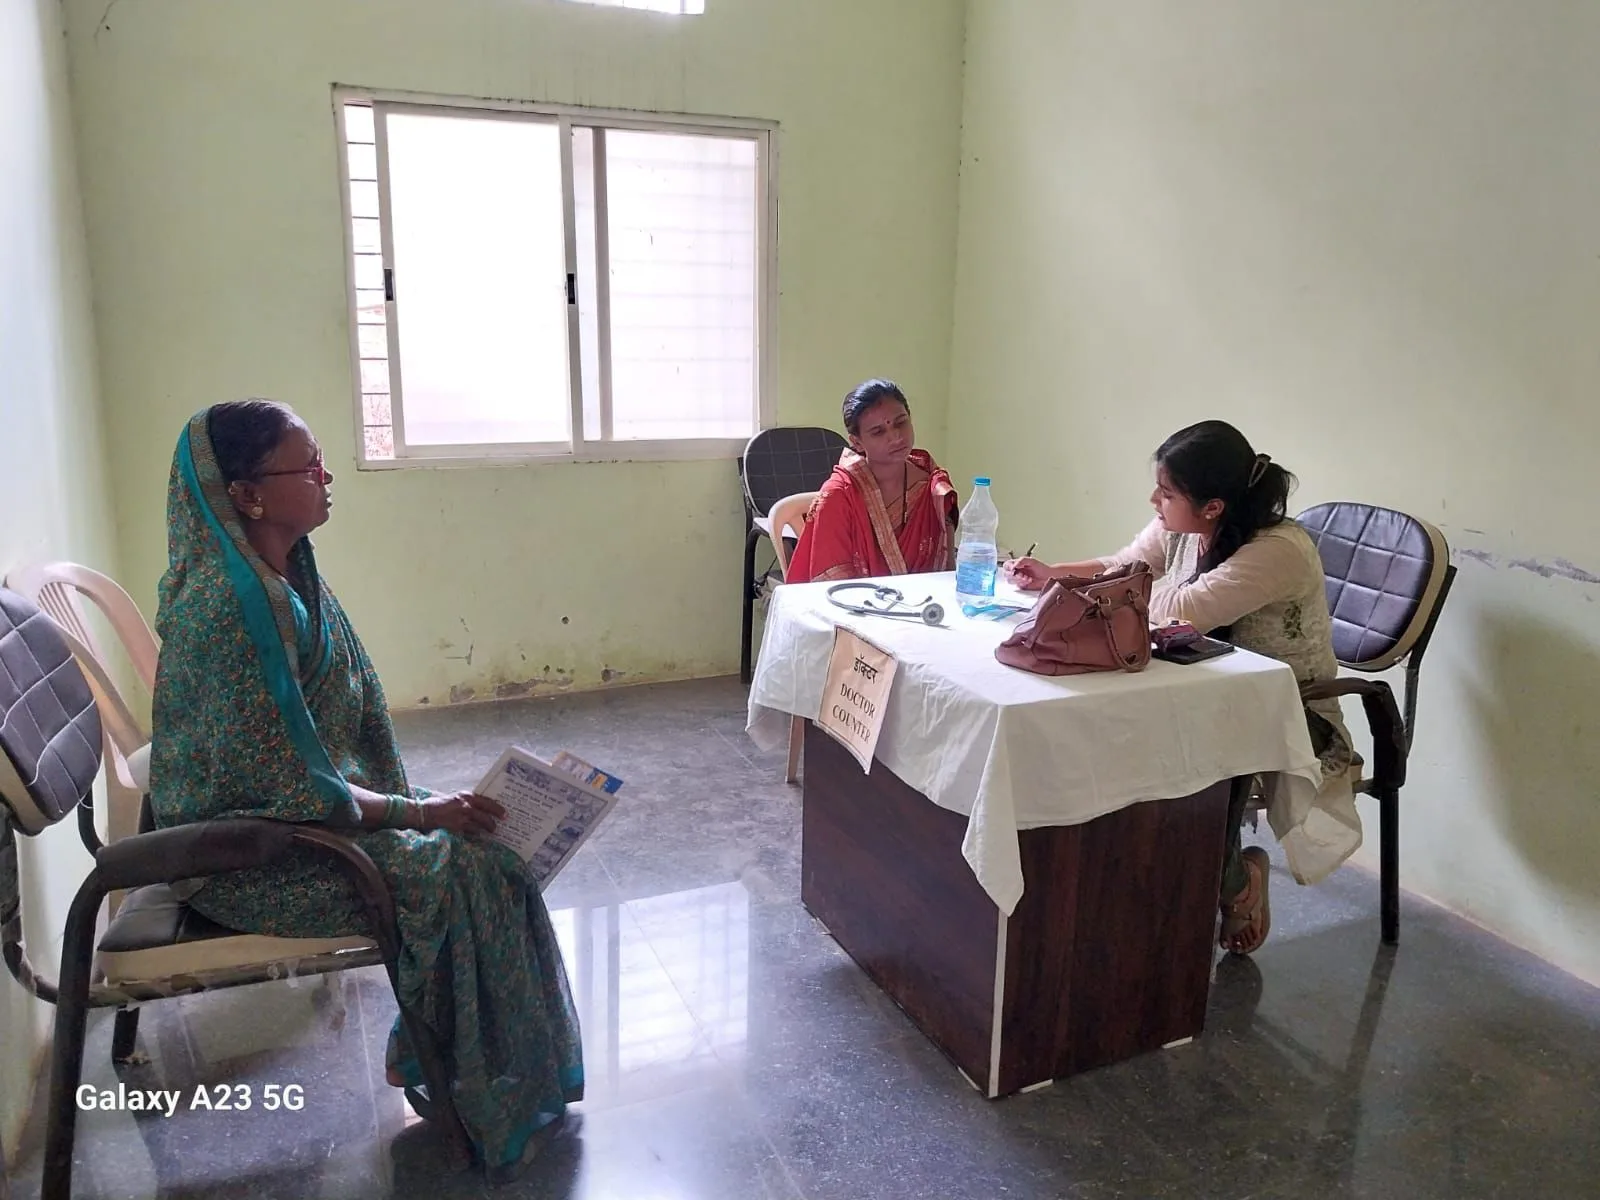 आल इज़ वेल हॉस्पिटल बुरहानपुर द्वारा ग्राम बोरसर में आयोजित किया गया निःशुल्क स्वास्थ्य शिविर | New India Times